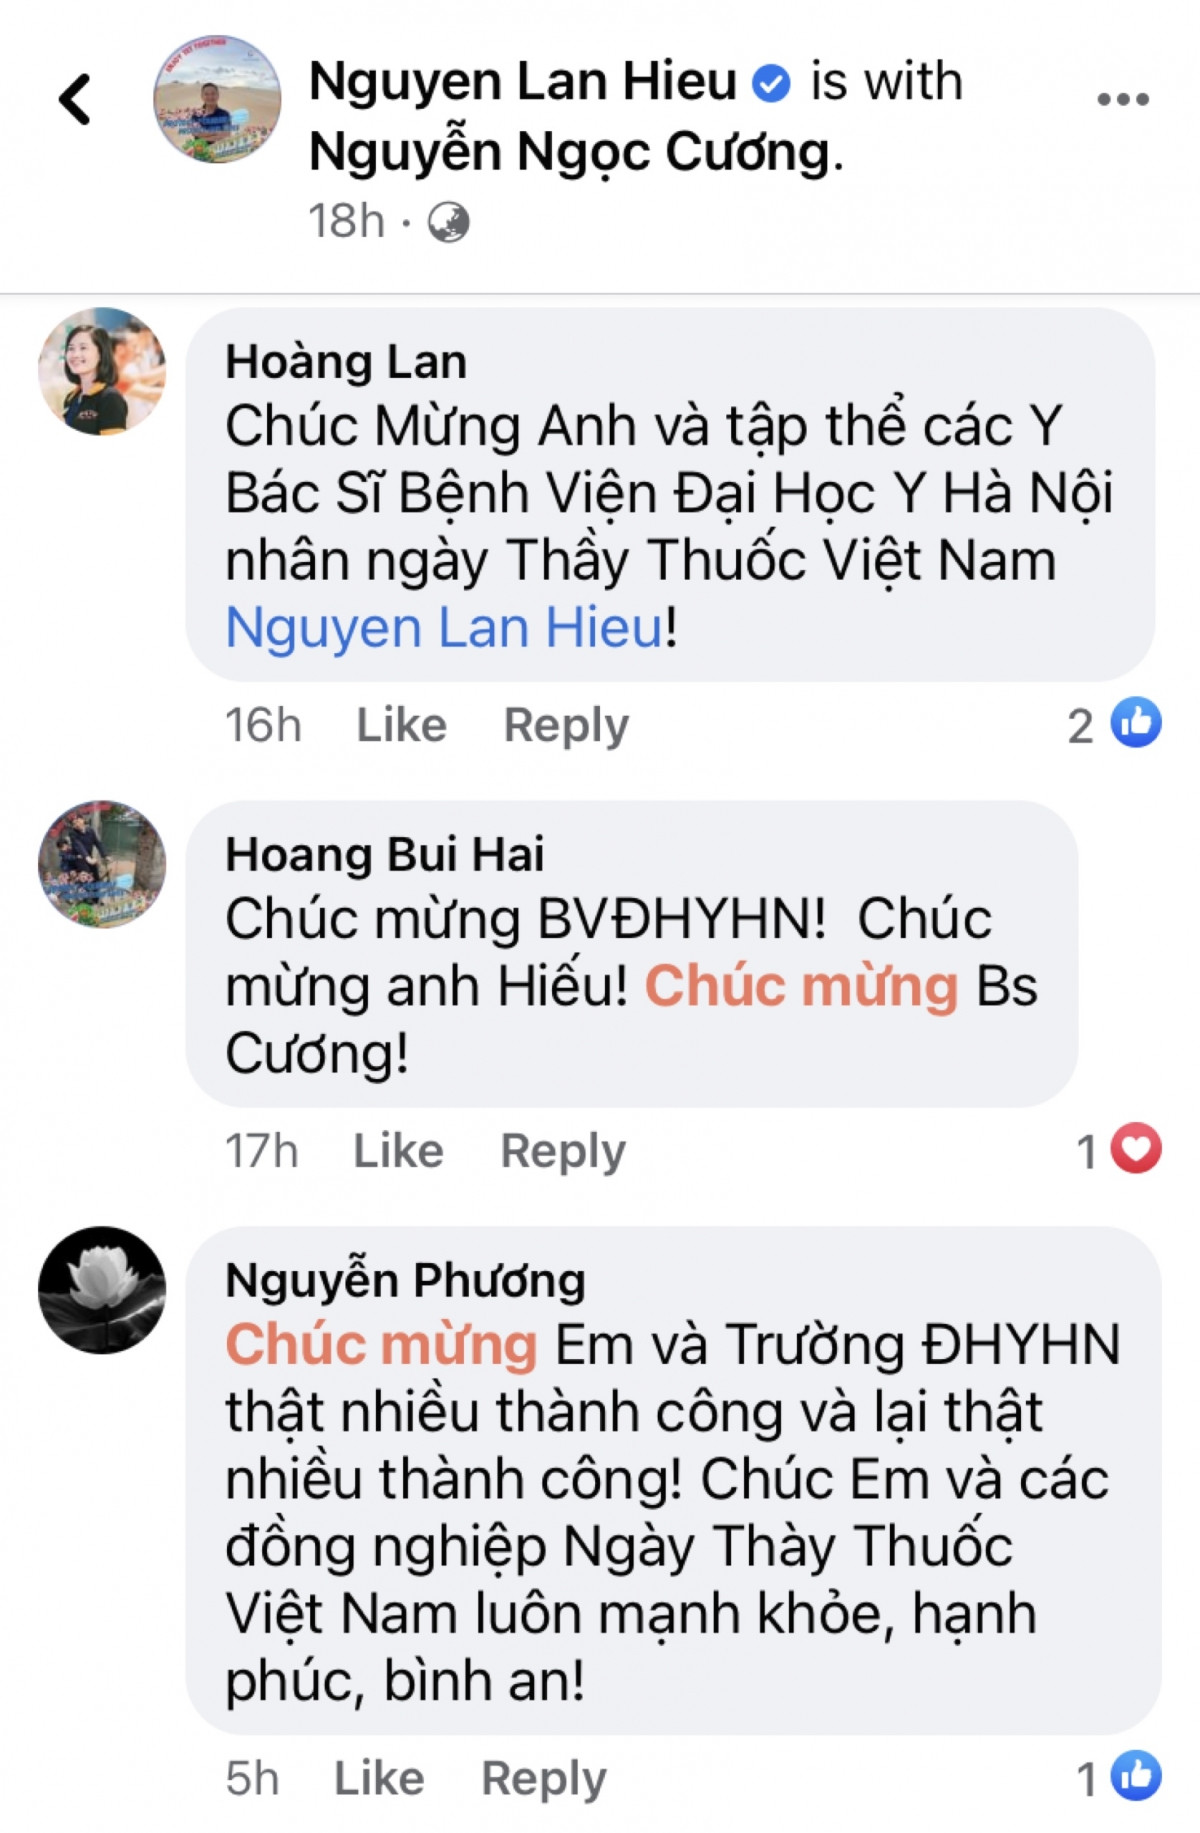 Những lời chúc mừng gửi tới PGS.TS Nguyễn Lân Hiếu - Giám đốc Bệnh viện Đại học Y Hà Nội.